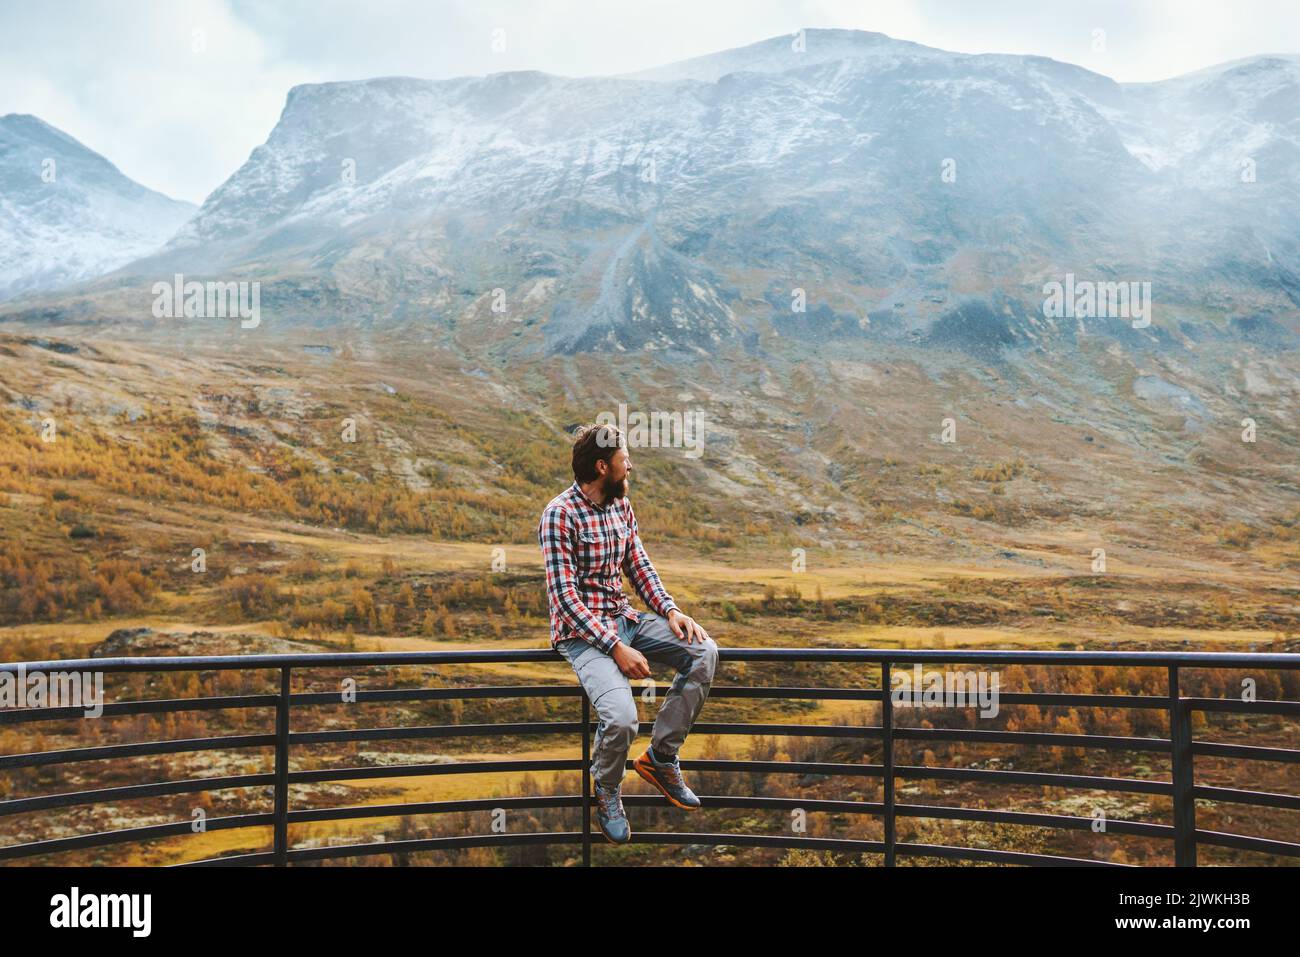 Reisender Mann in den Bergen von Norwegen Herbst Saison Reise aktiv gesund Lebensstil Abenteuer Wandern Ferien Jotunheimen Park Aussichtspunkt Stockfoto